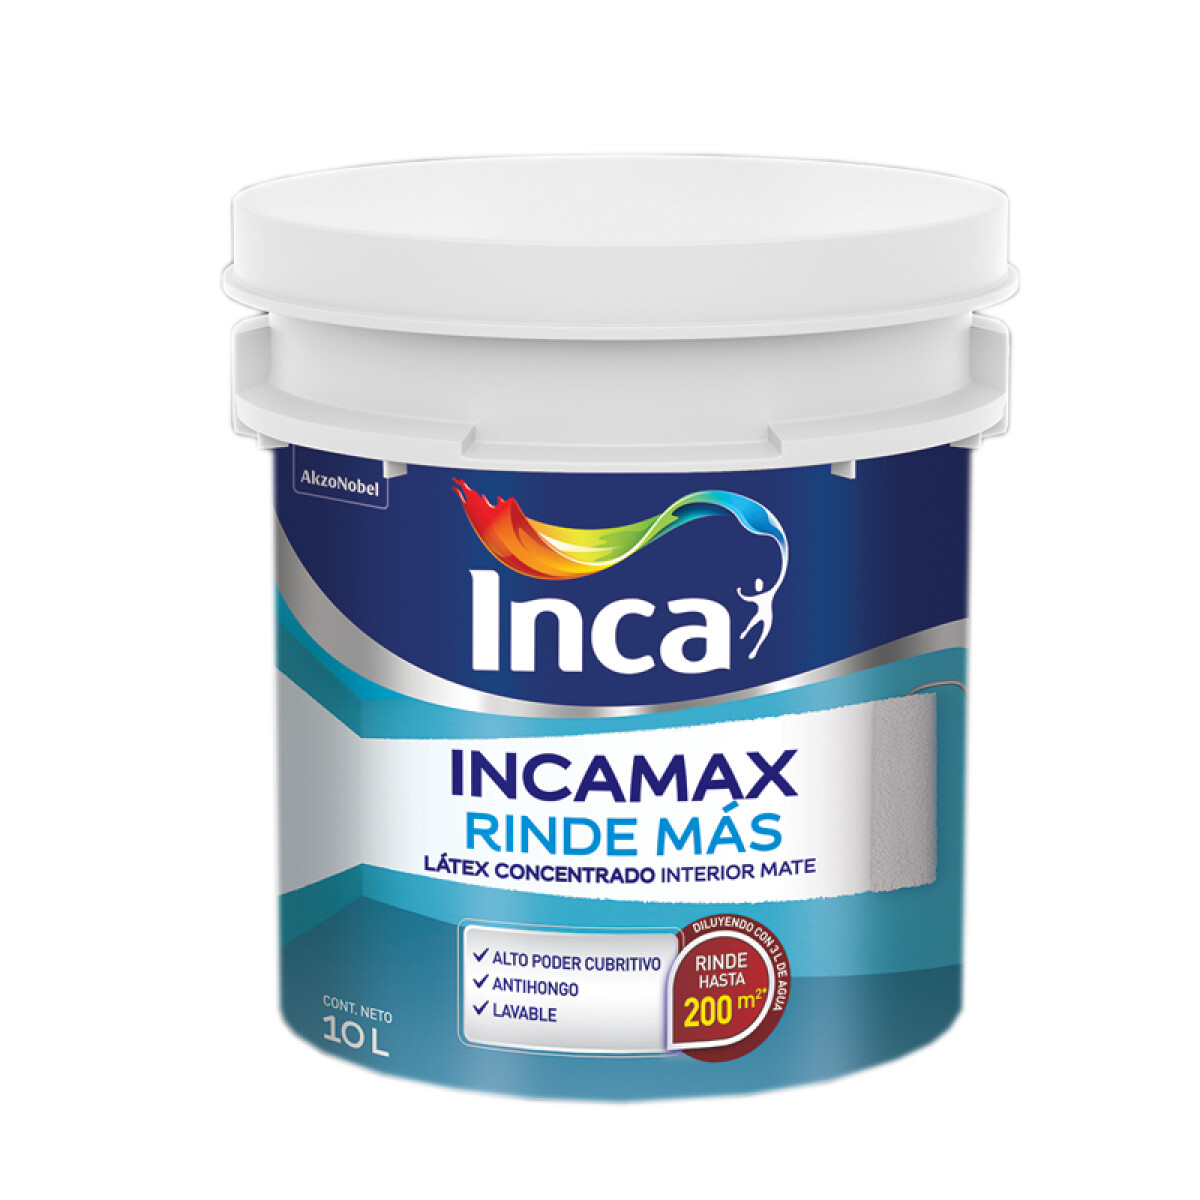 INCAMAX RINDE MAS BLANCO 20L INCA 